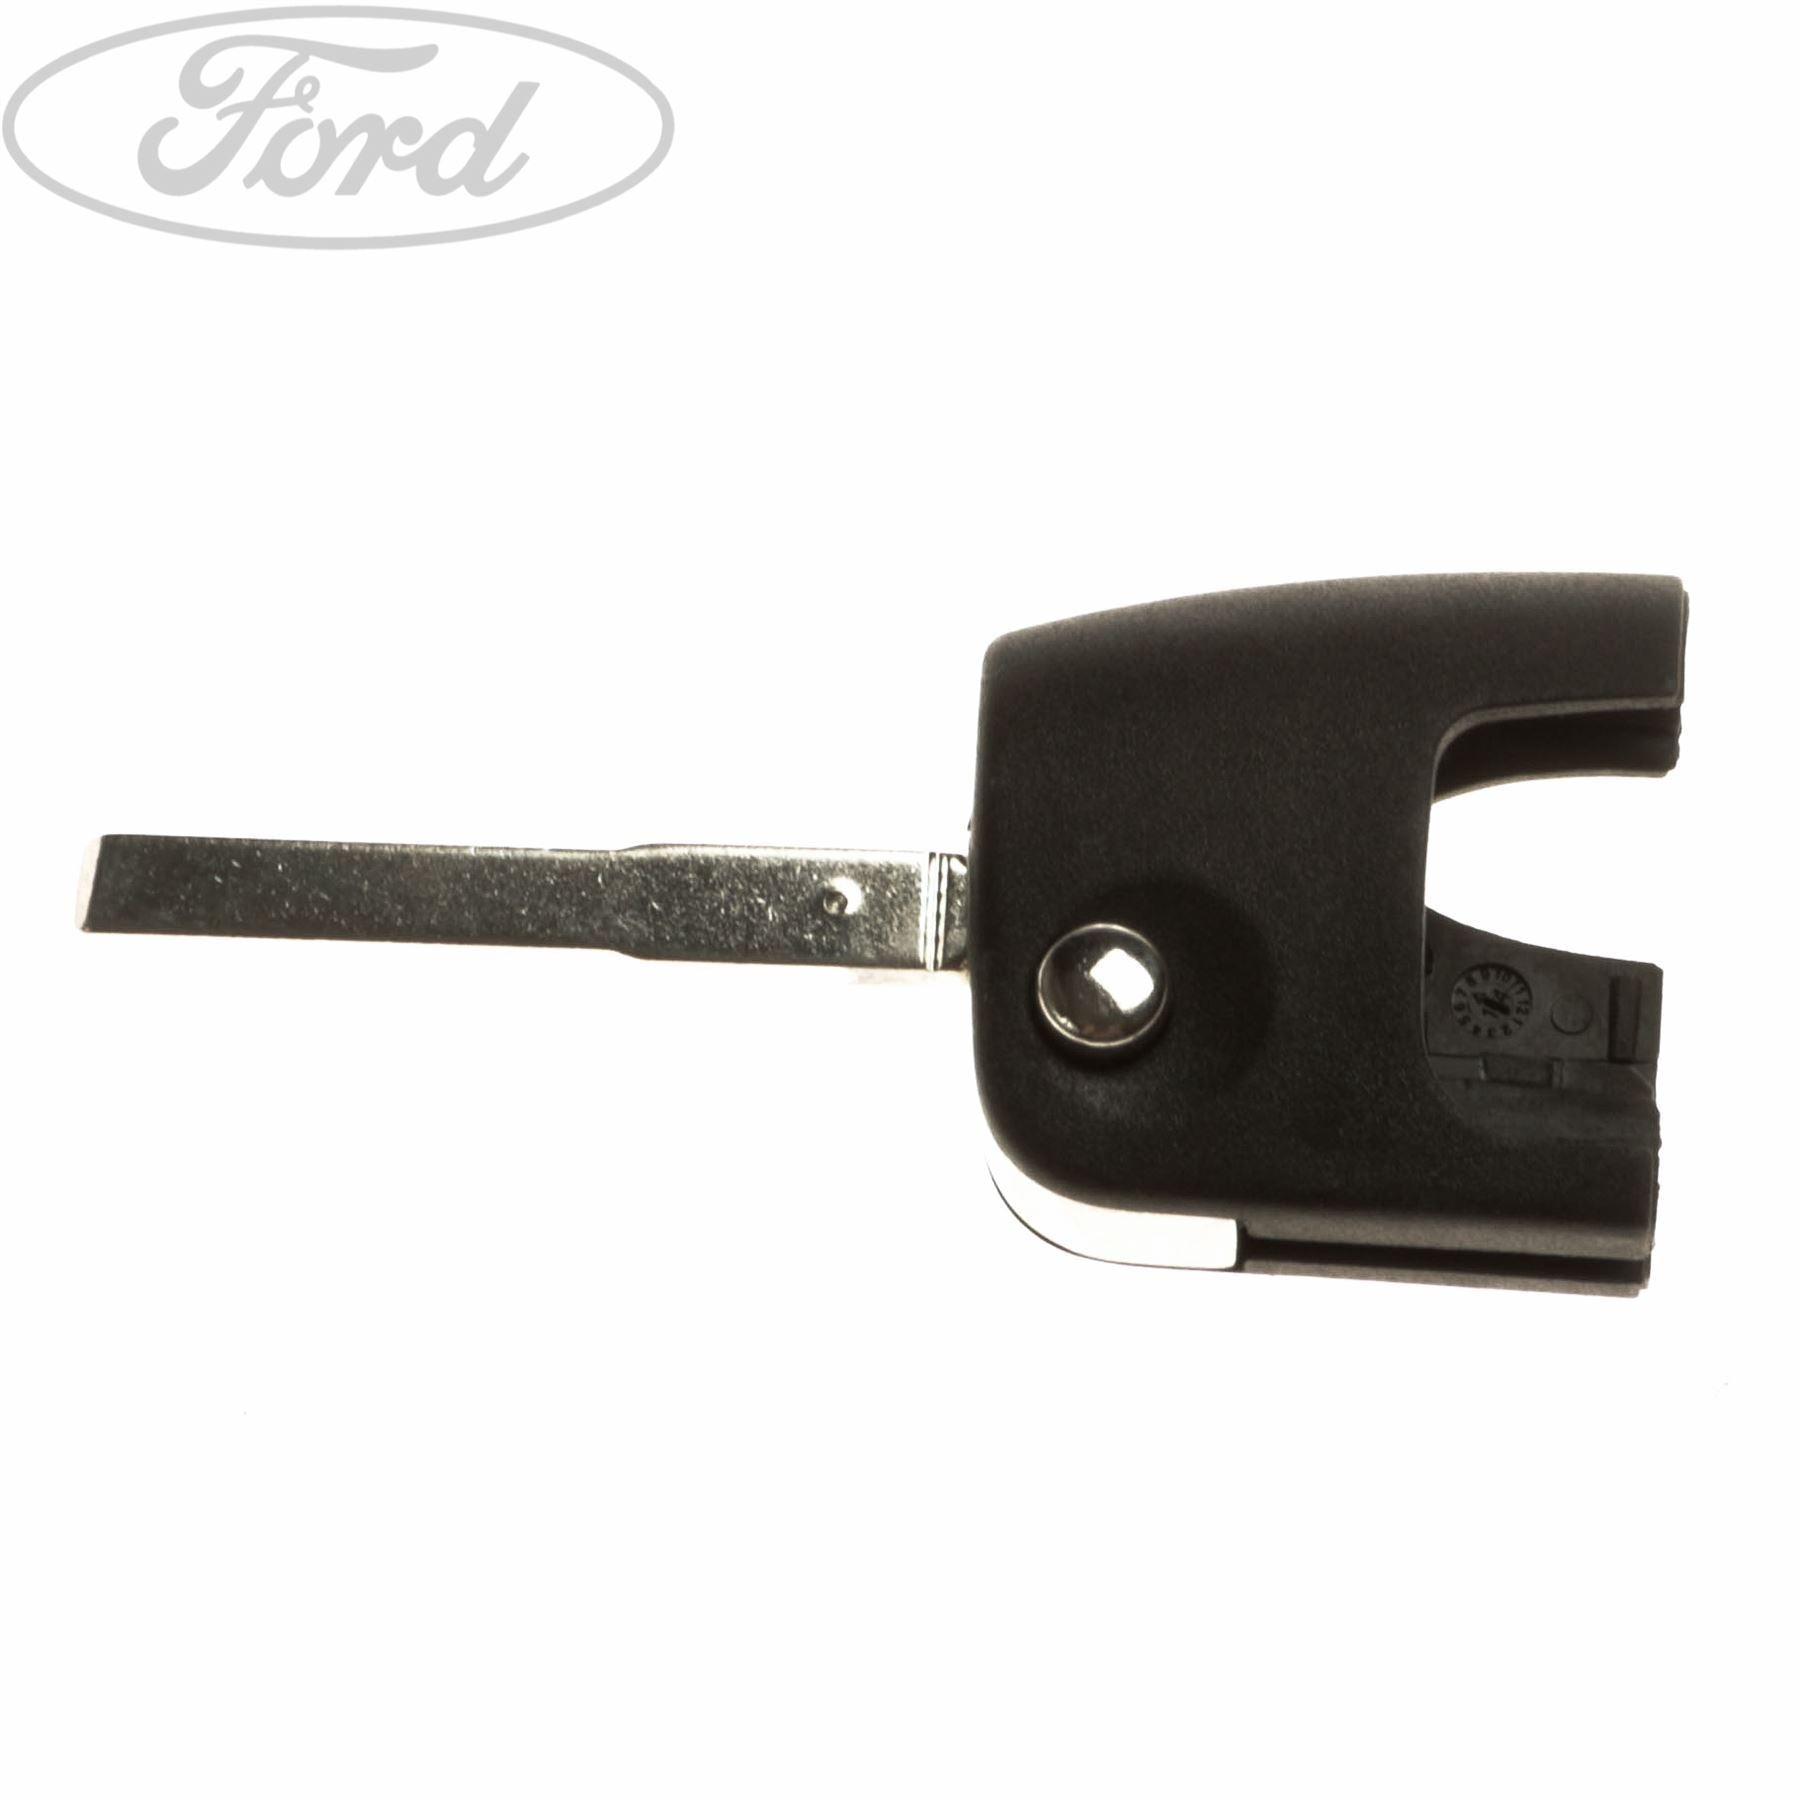 Original Ford Schloss-Ersatzteile, Ford Schlüssel Ersatzteile